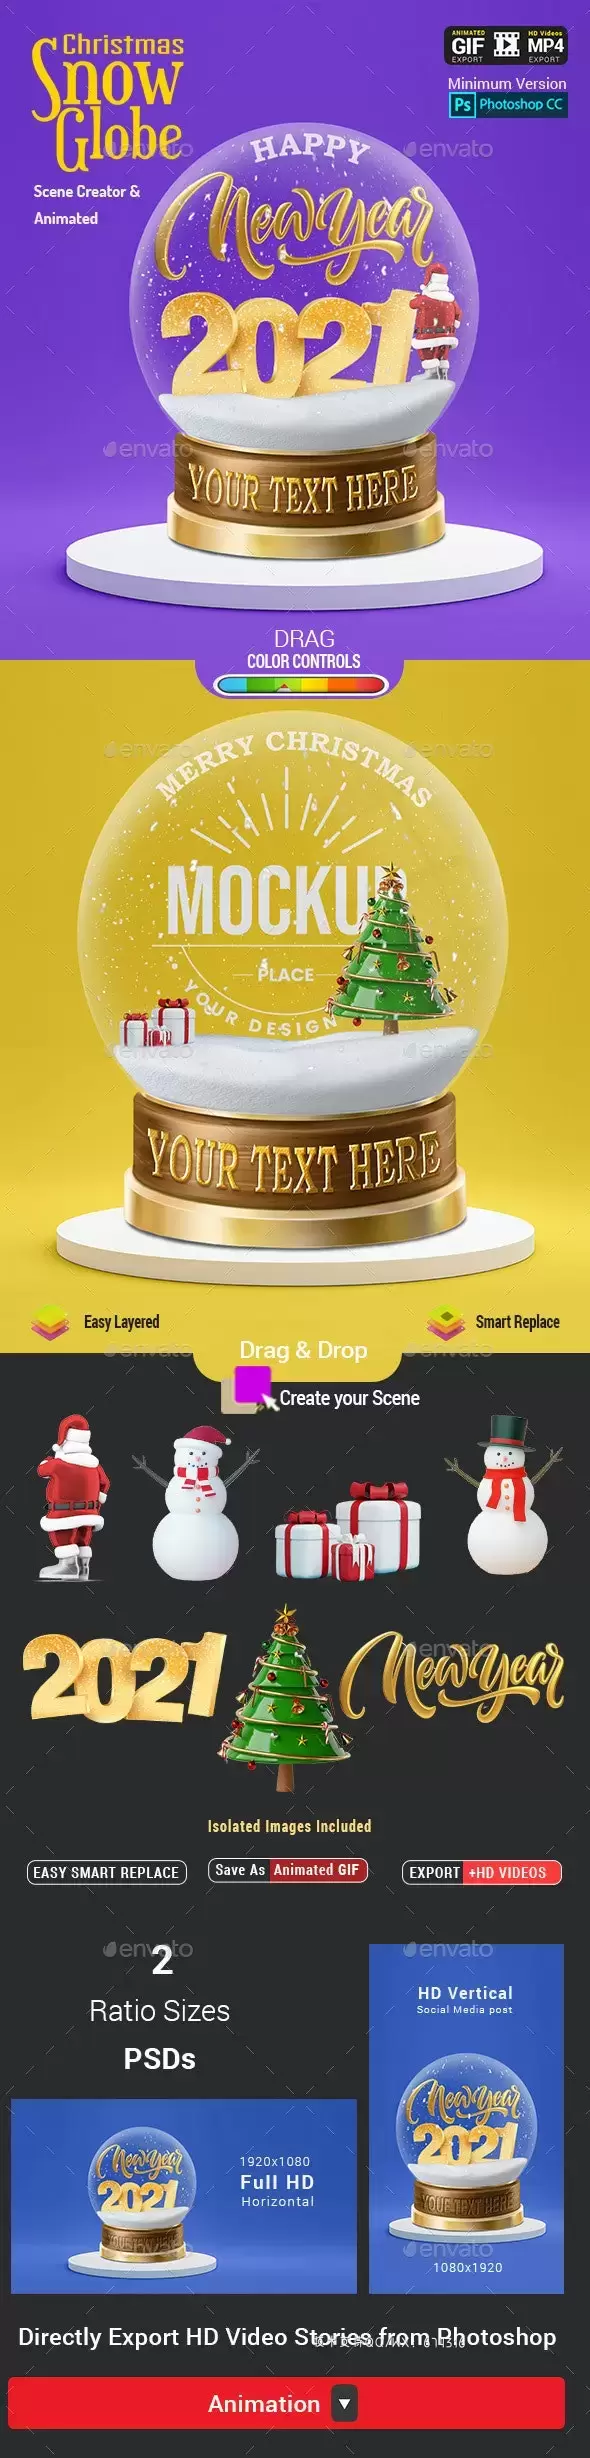 圣诞雪景球-动画场景生成器样机模板 (PSD)免费下载